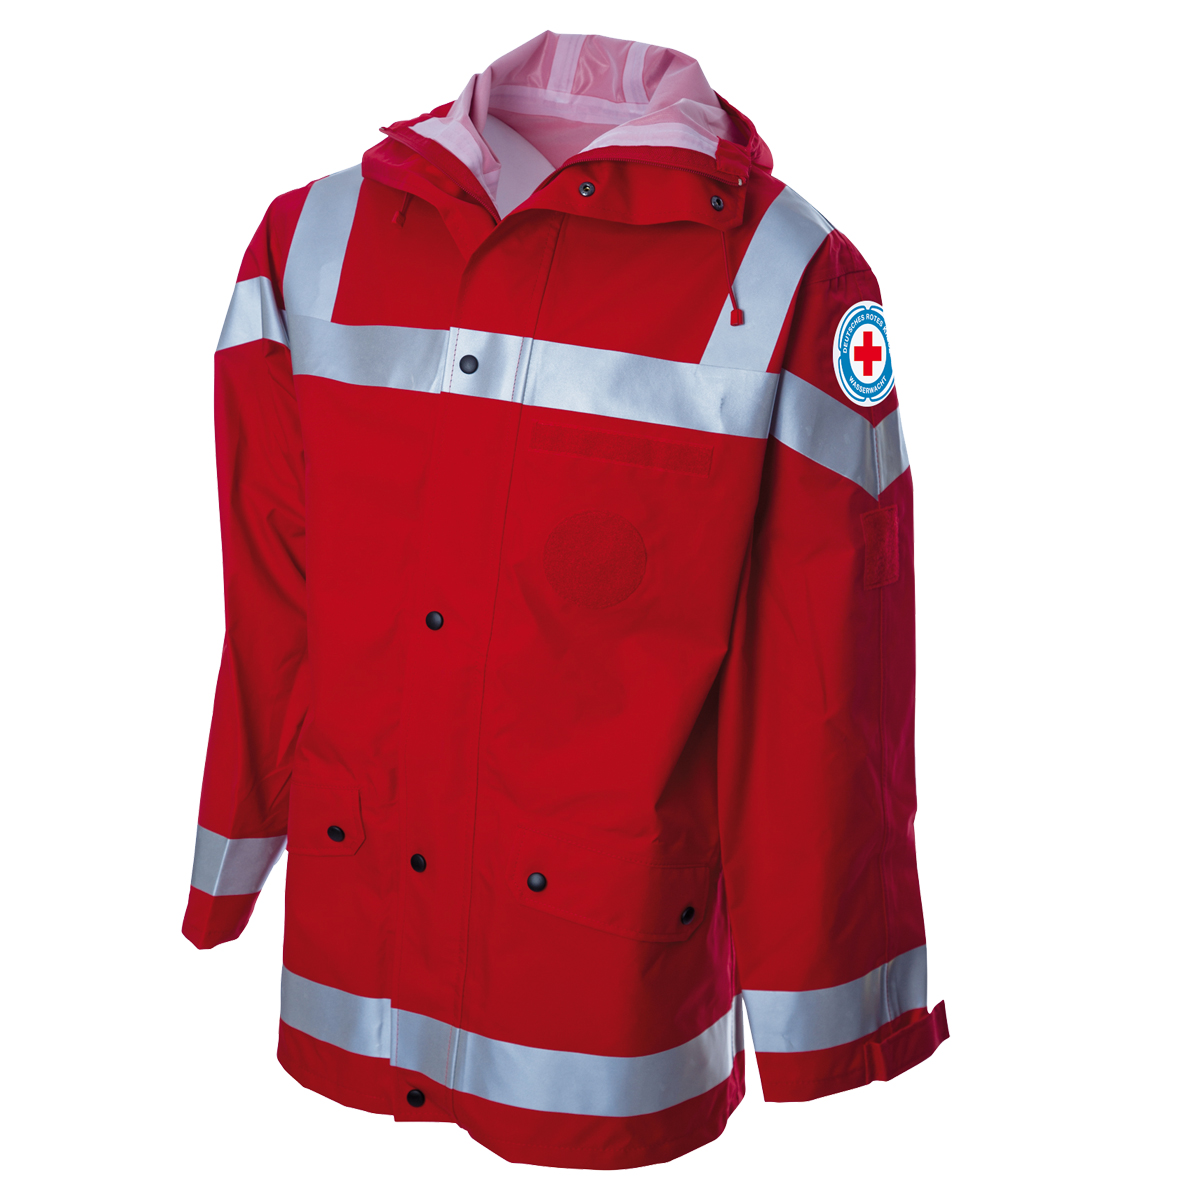 Produktbild: Wetterschutzjacke Wasserwacht, rot